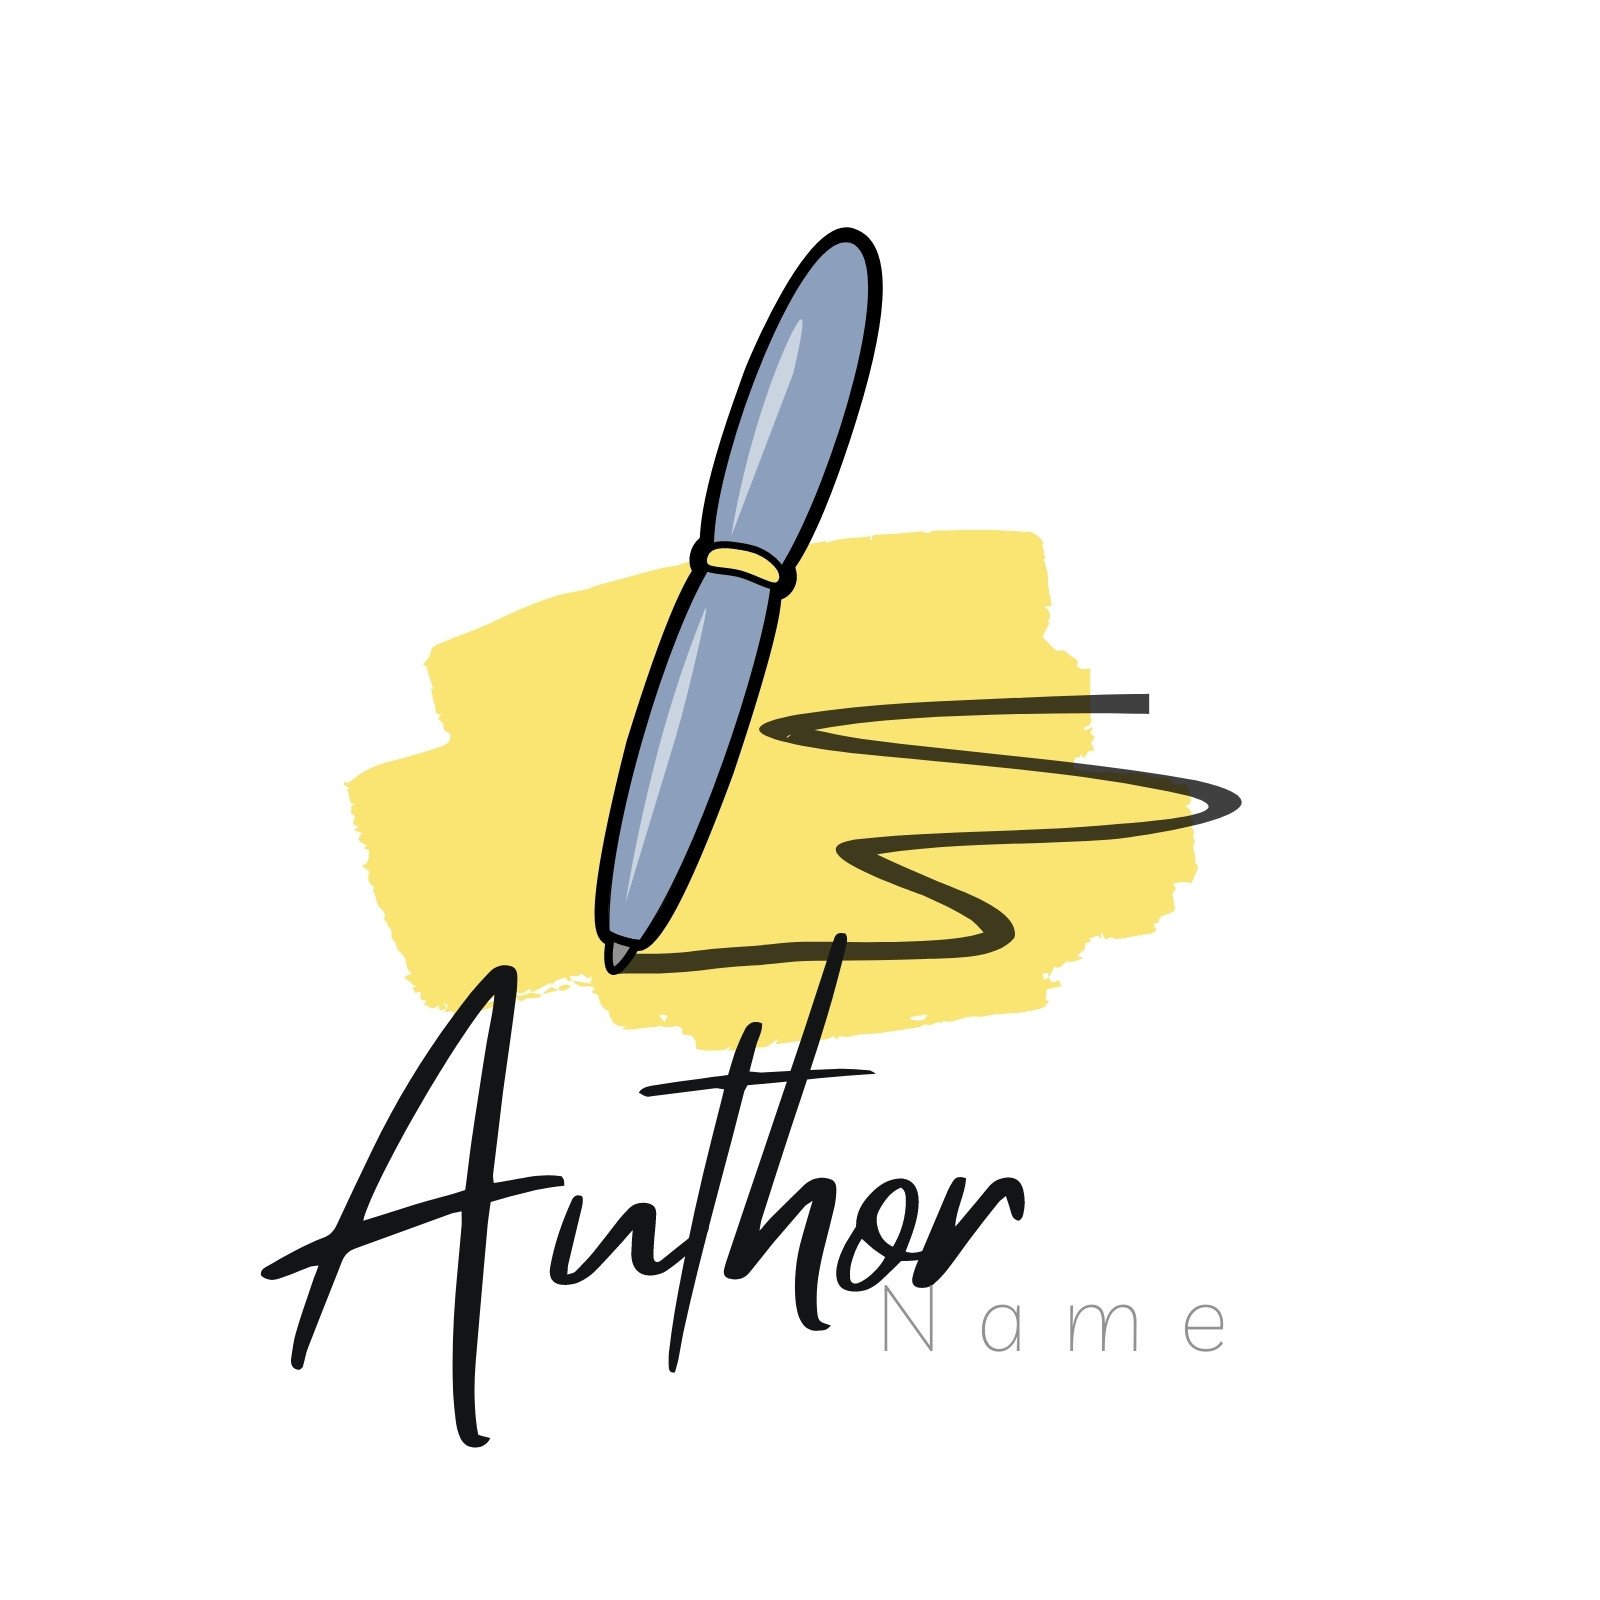 Writing and Publishing Theme